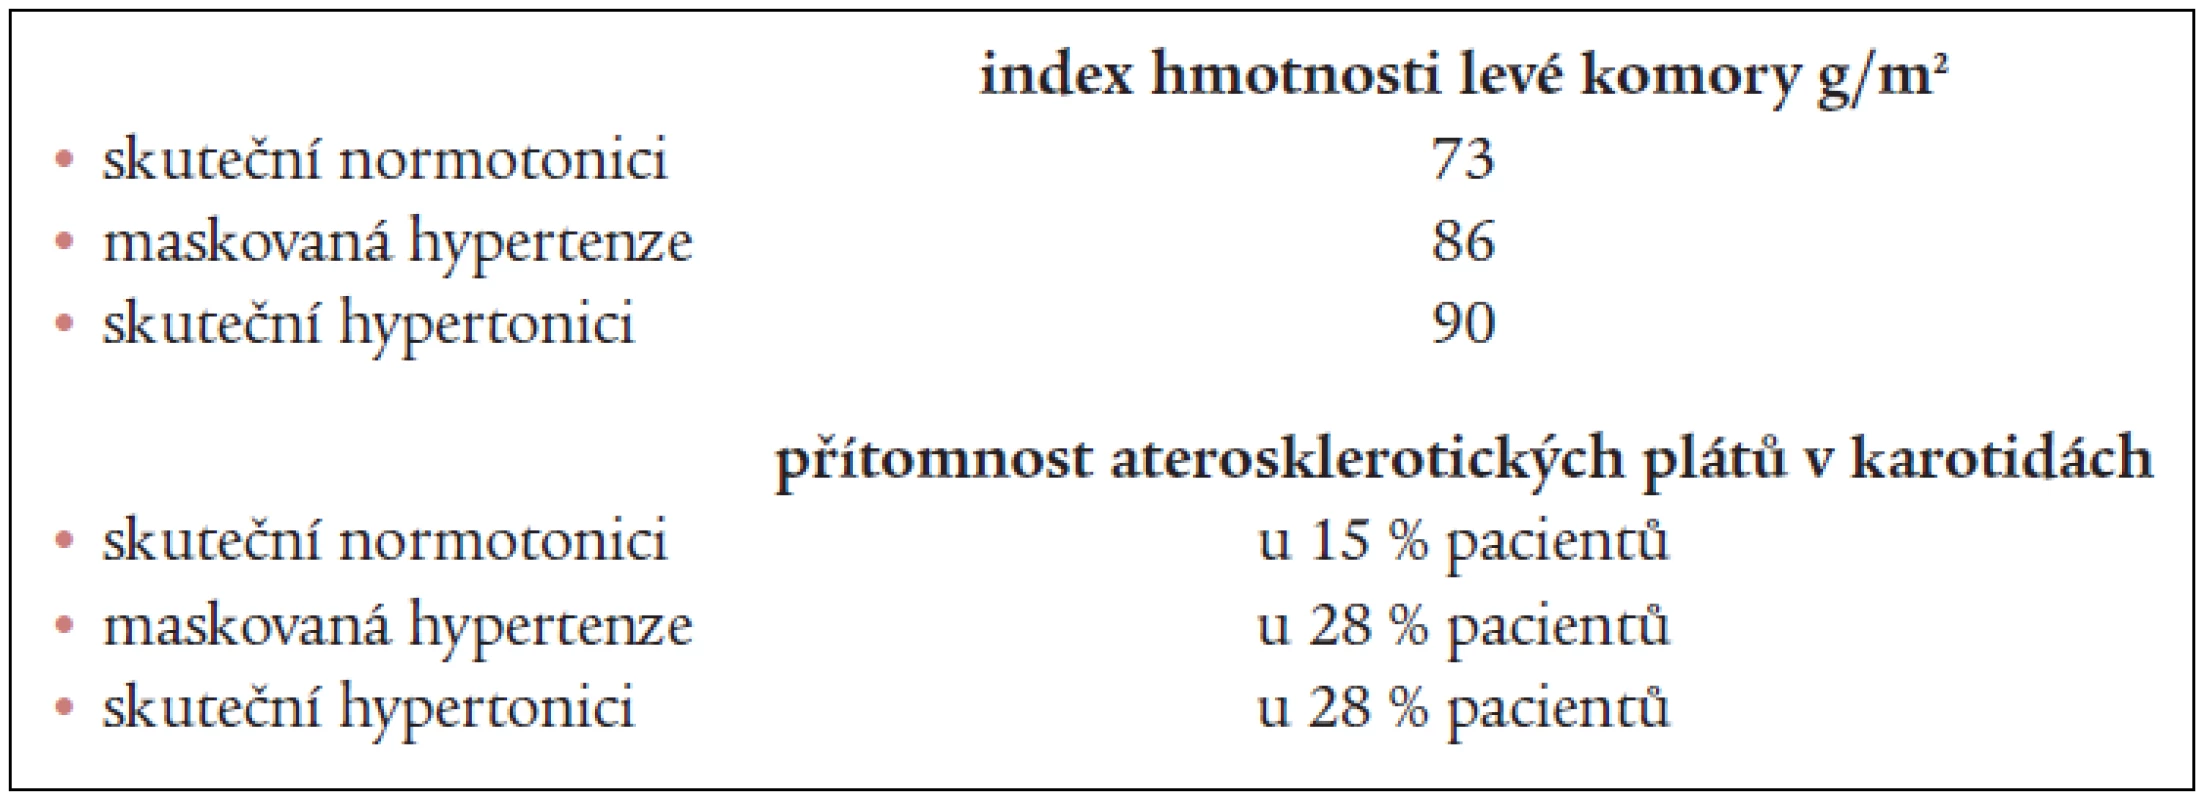 Index hmotnosti a přítomnost aterosklerotických plátů v karotidách u maskované hypertenze.